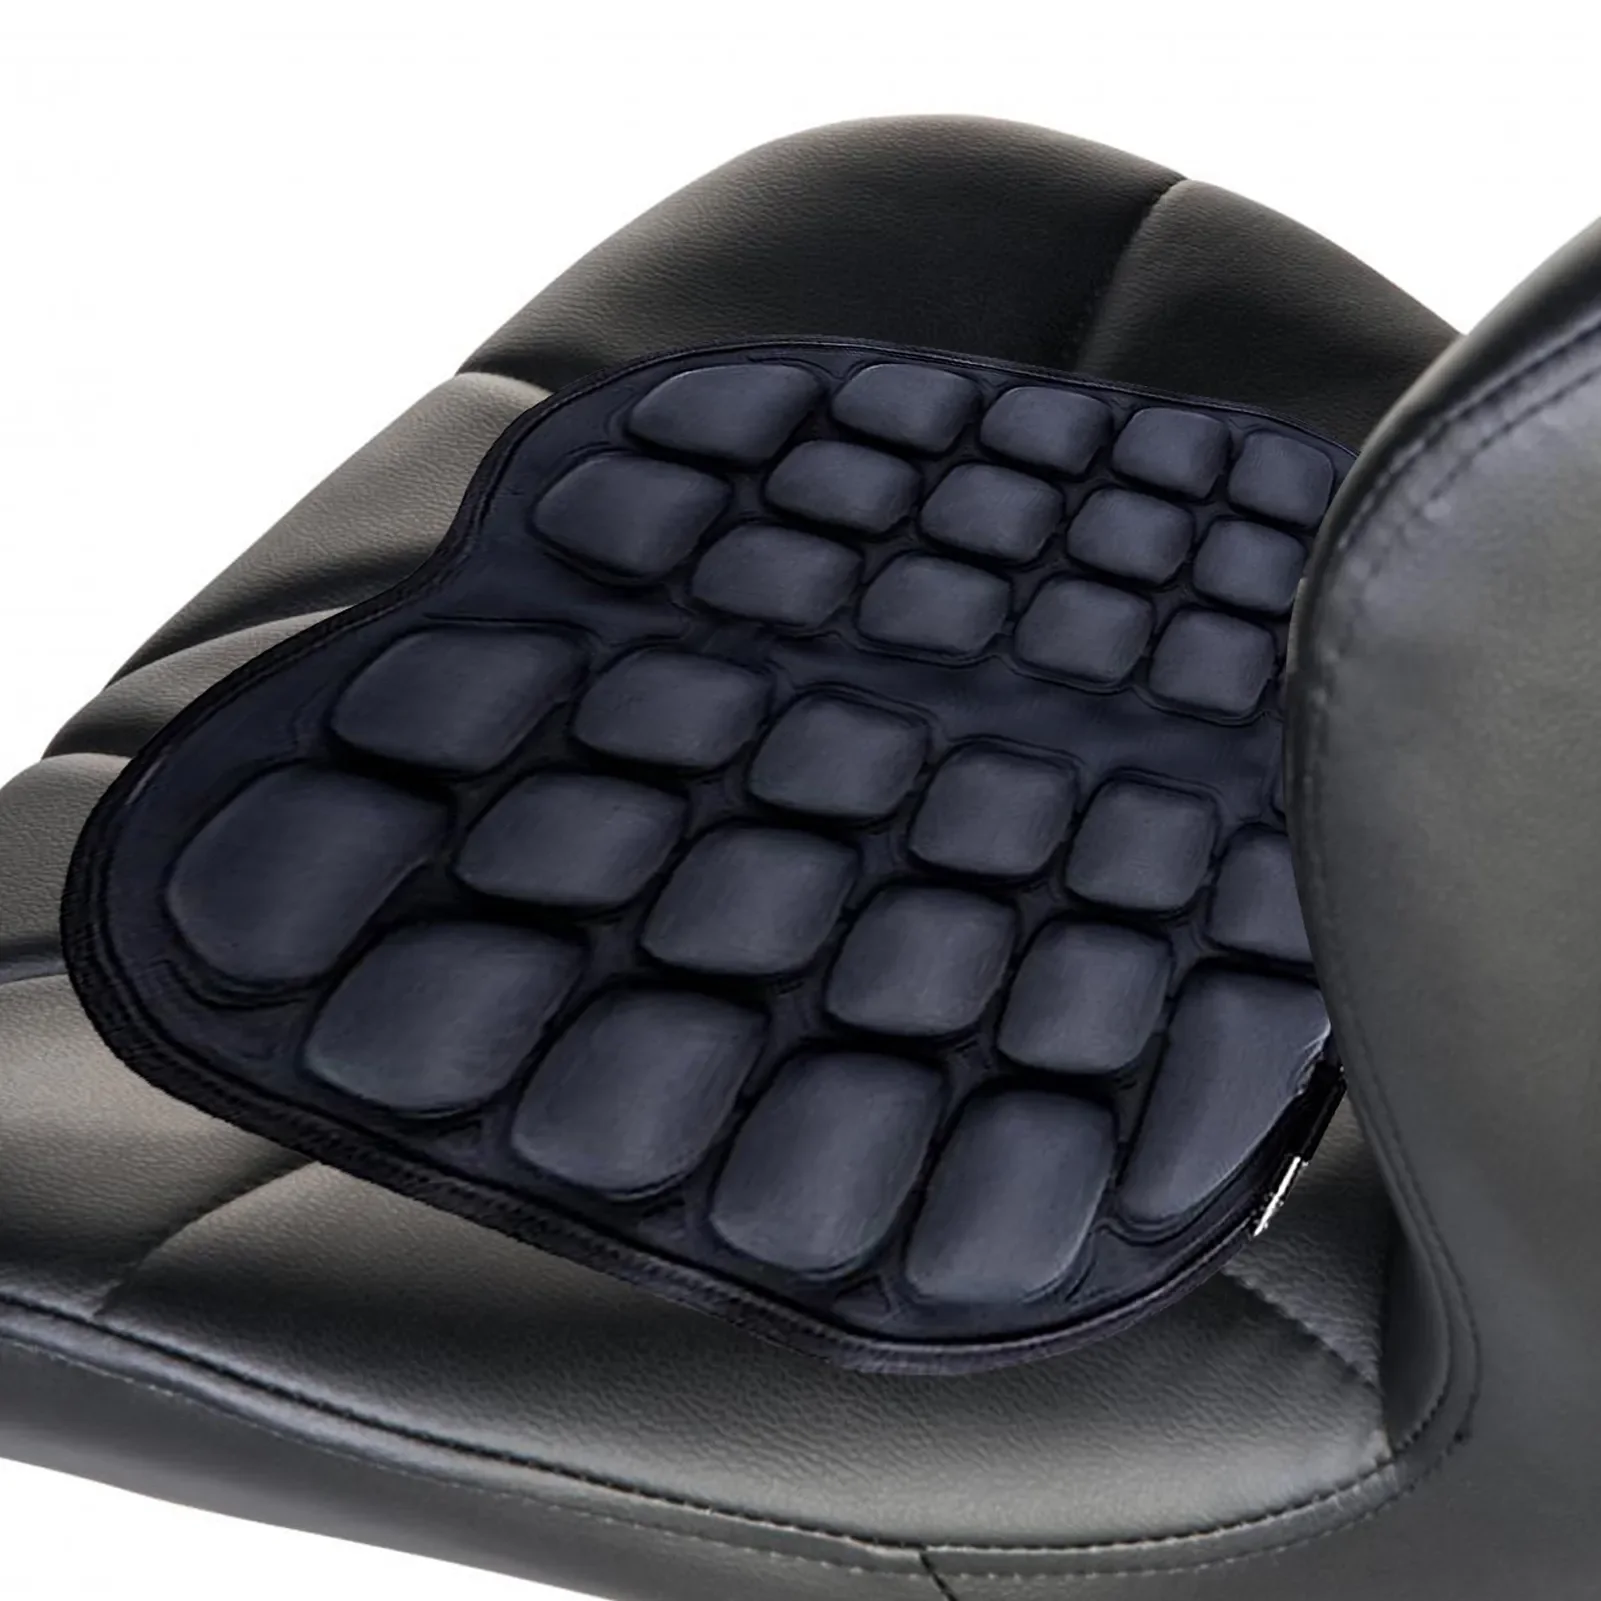 

Воздухопроницаемые подушки для сиденья, амортизирующая подушка для мотоцикла, охлаждающий чехол для длительного сидения